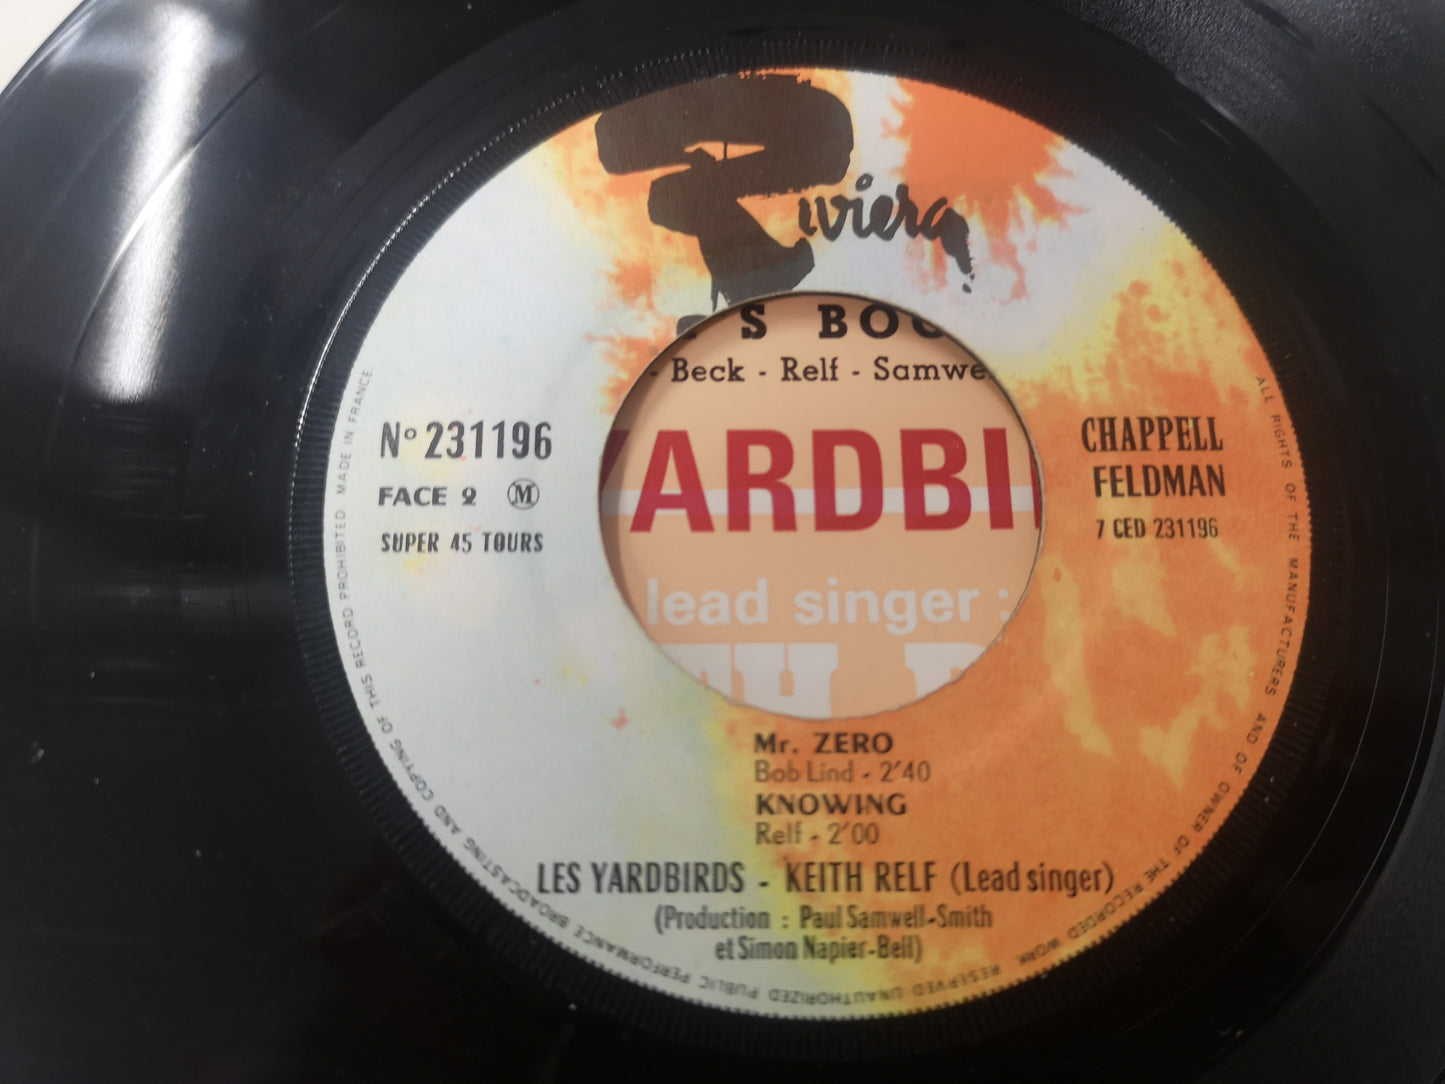 Yardbirds "Over Under Sideways Down" Orig France 1966 w/ Keith Relf EX/VG++